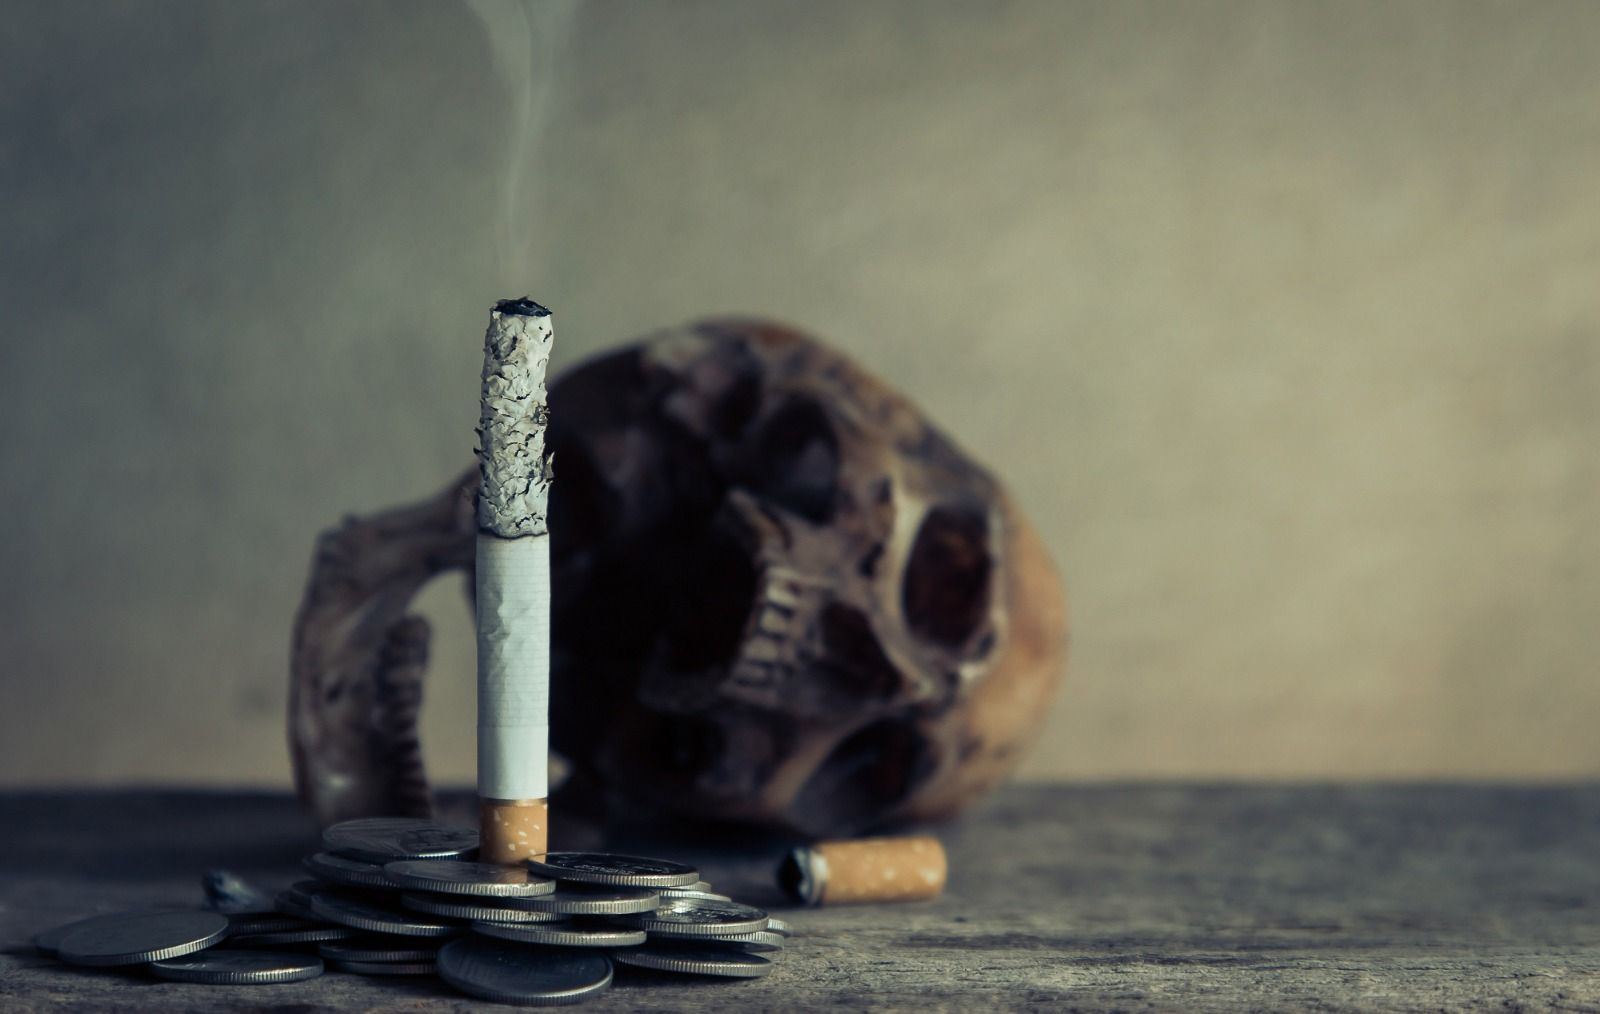 Merokok berdampak buruk terhadap kesehatan dan lingkungan.